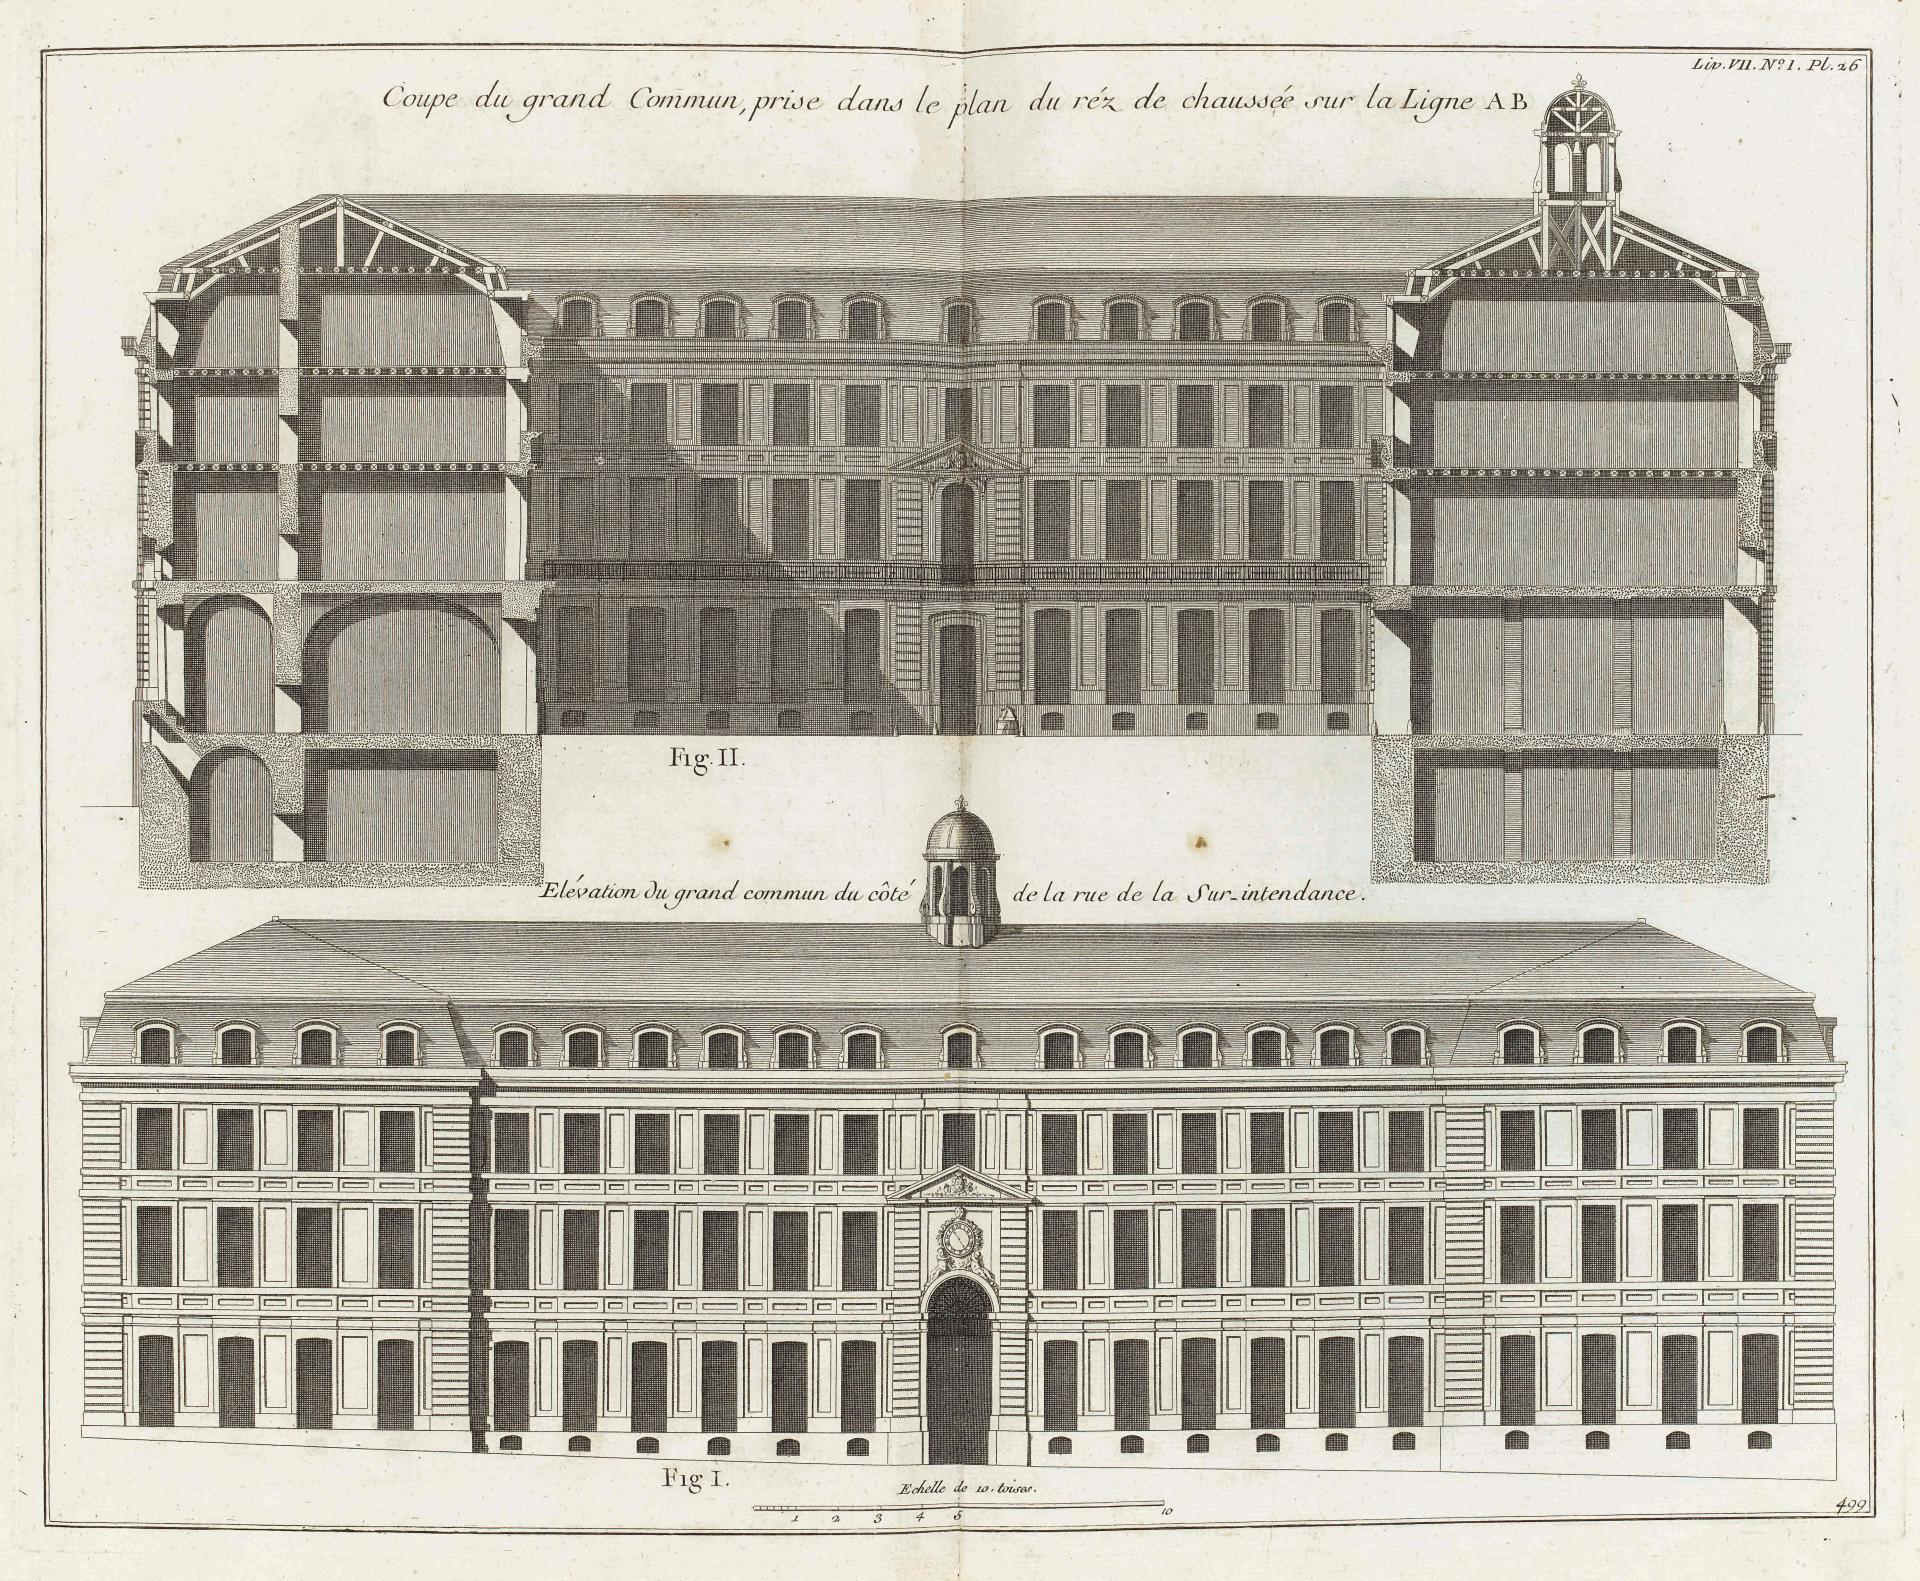 Construction of the Château de Versailles